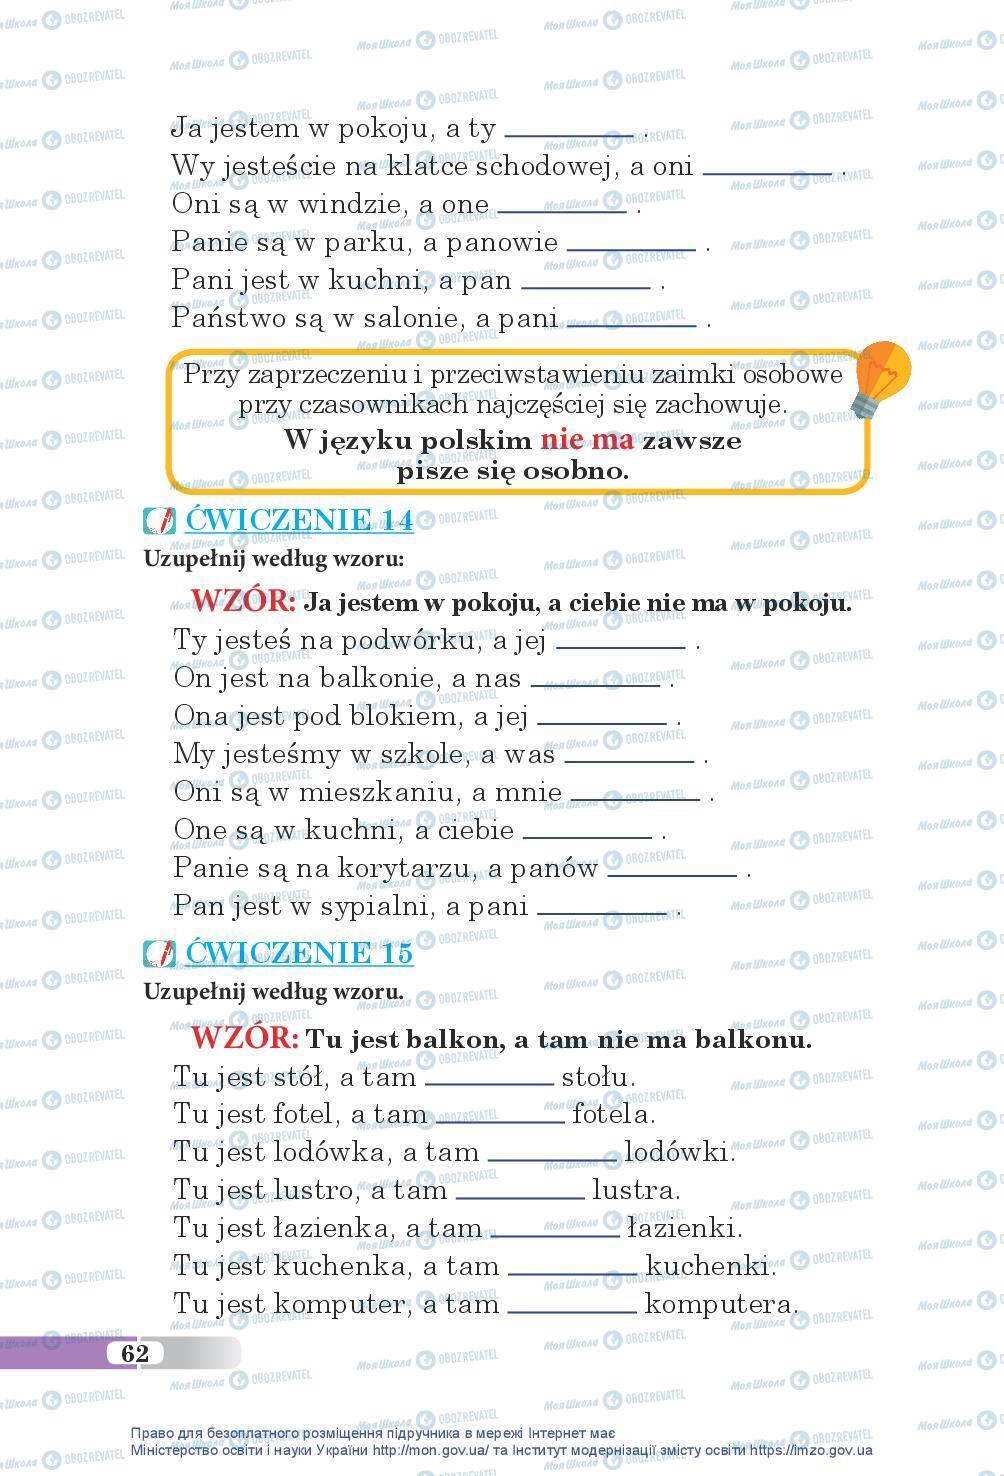 Підручники Польська мова 5 клас сторінка 62